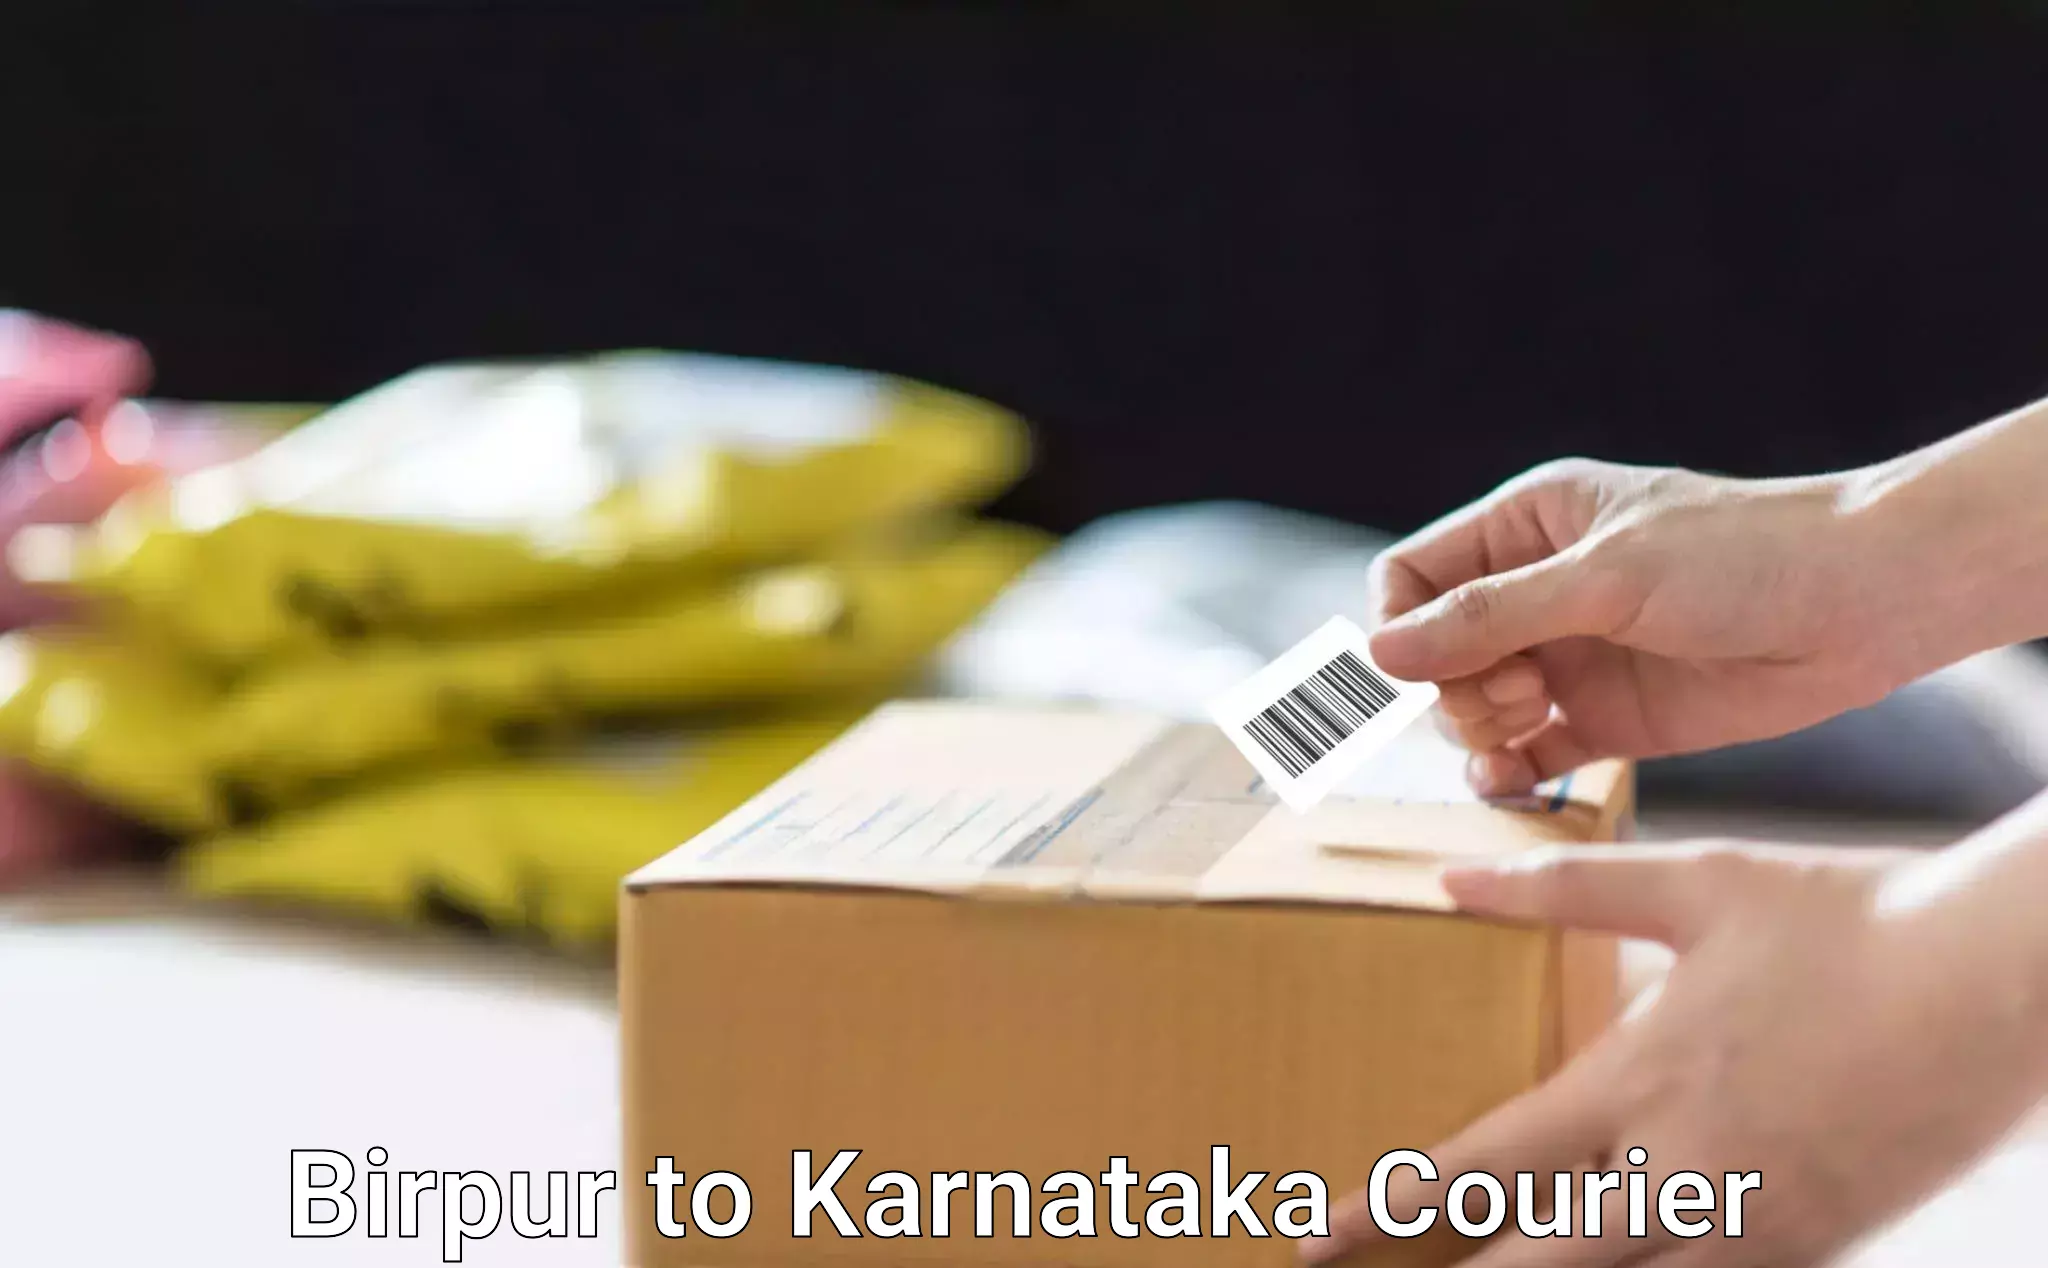 Expert moving and storage Birpur to Karnataka